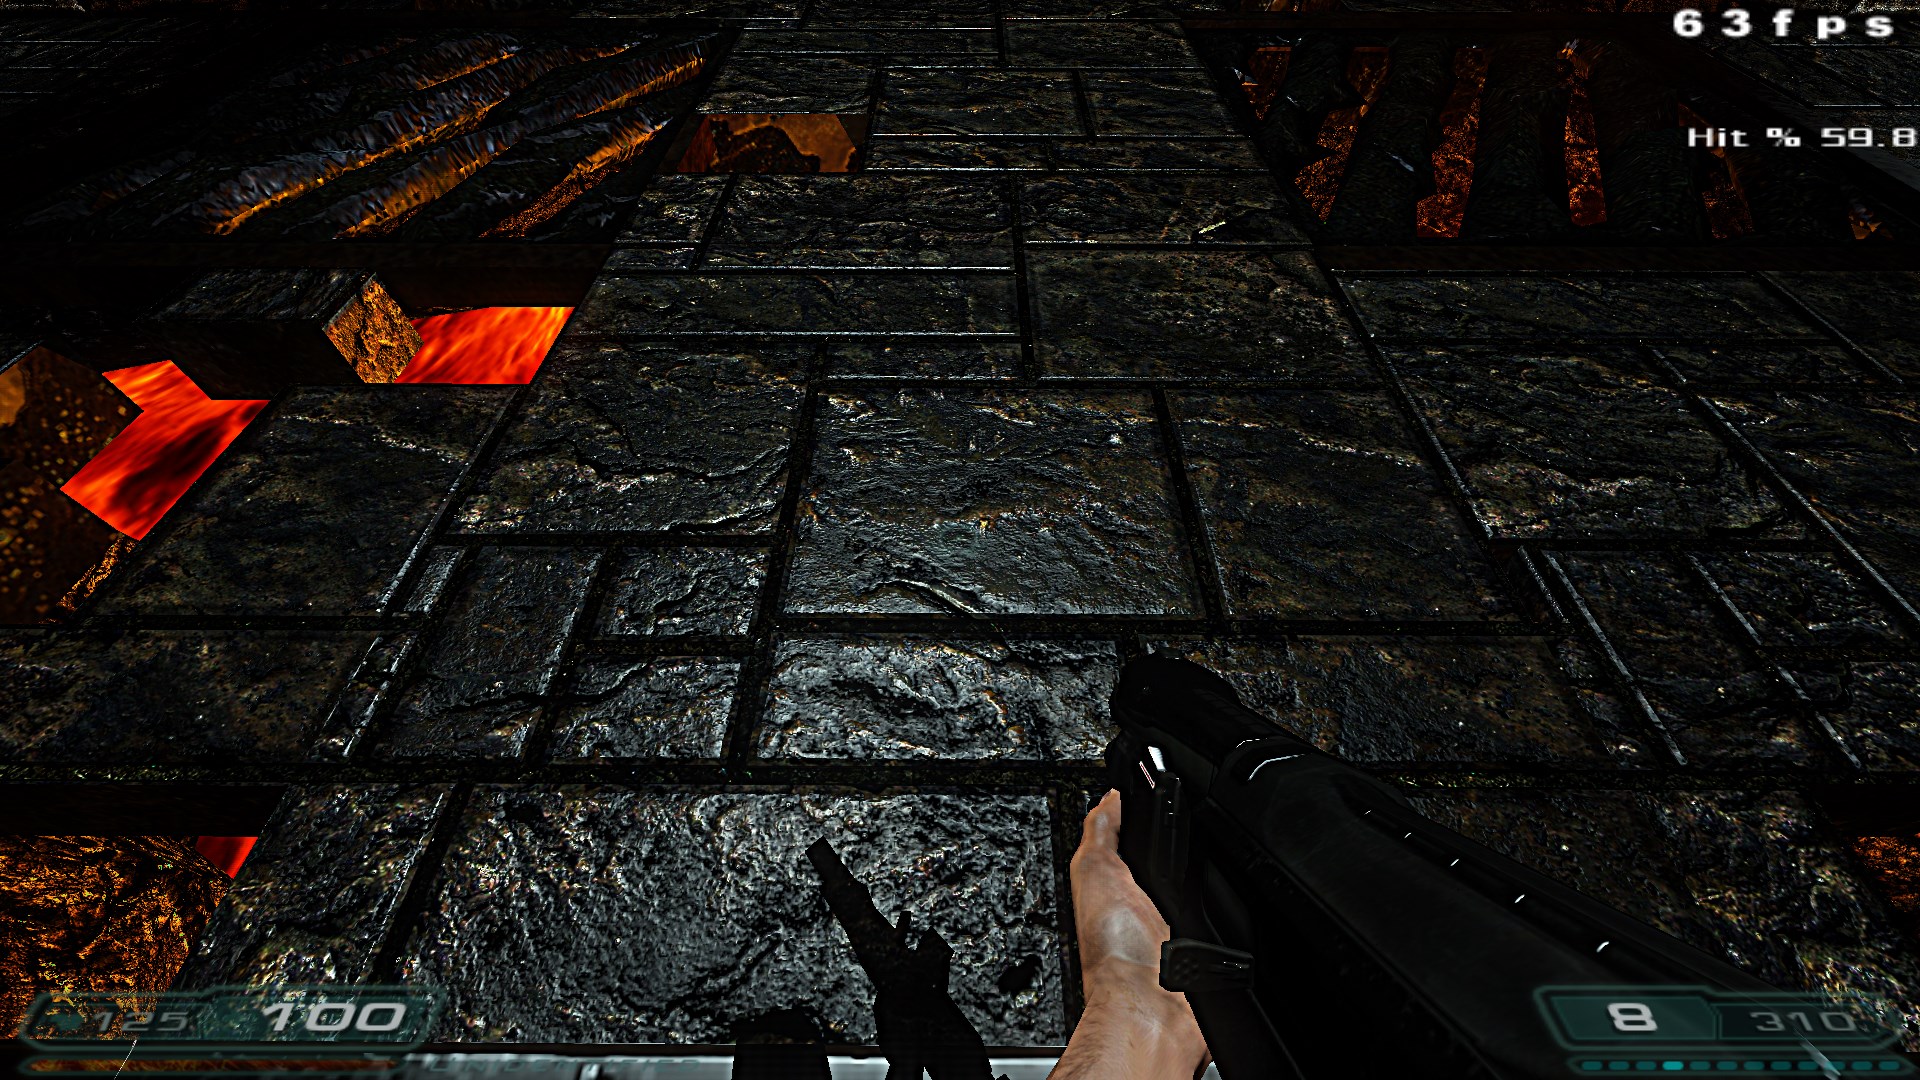 Doom 2 doom 2016 mod